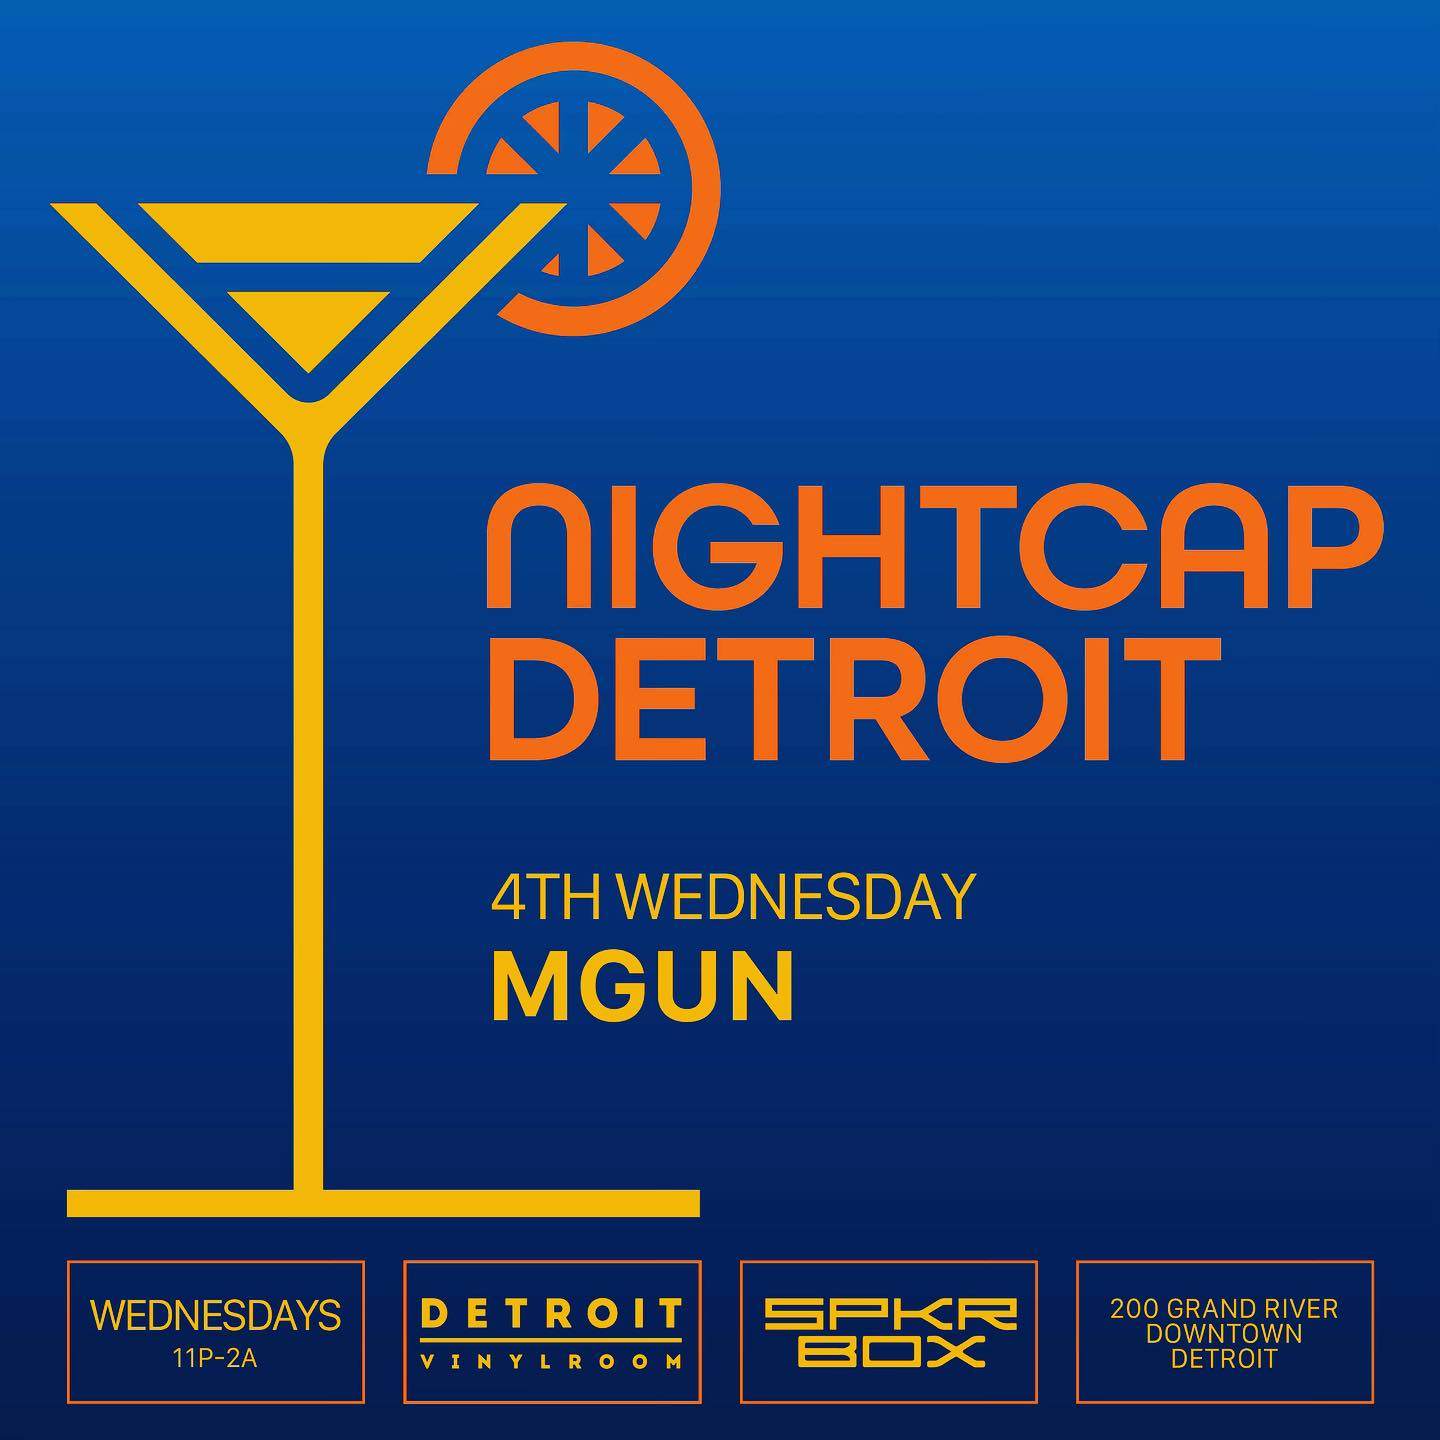 Nightcap Detroit with MGUN - Página frontal